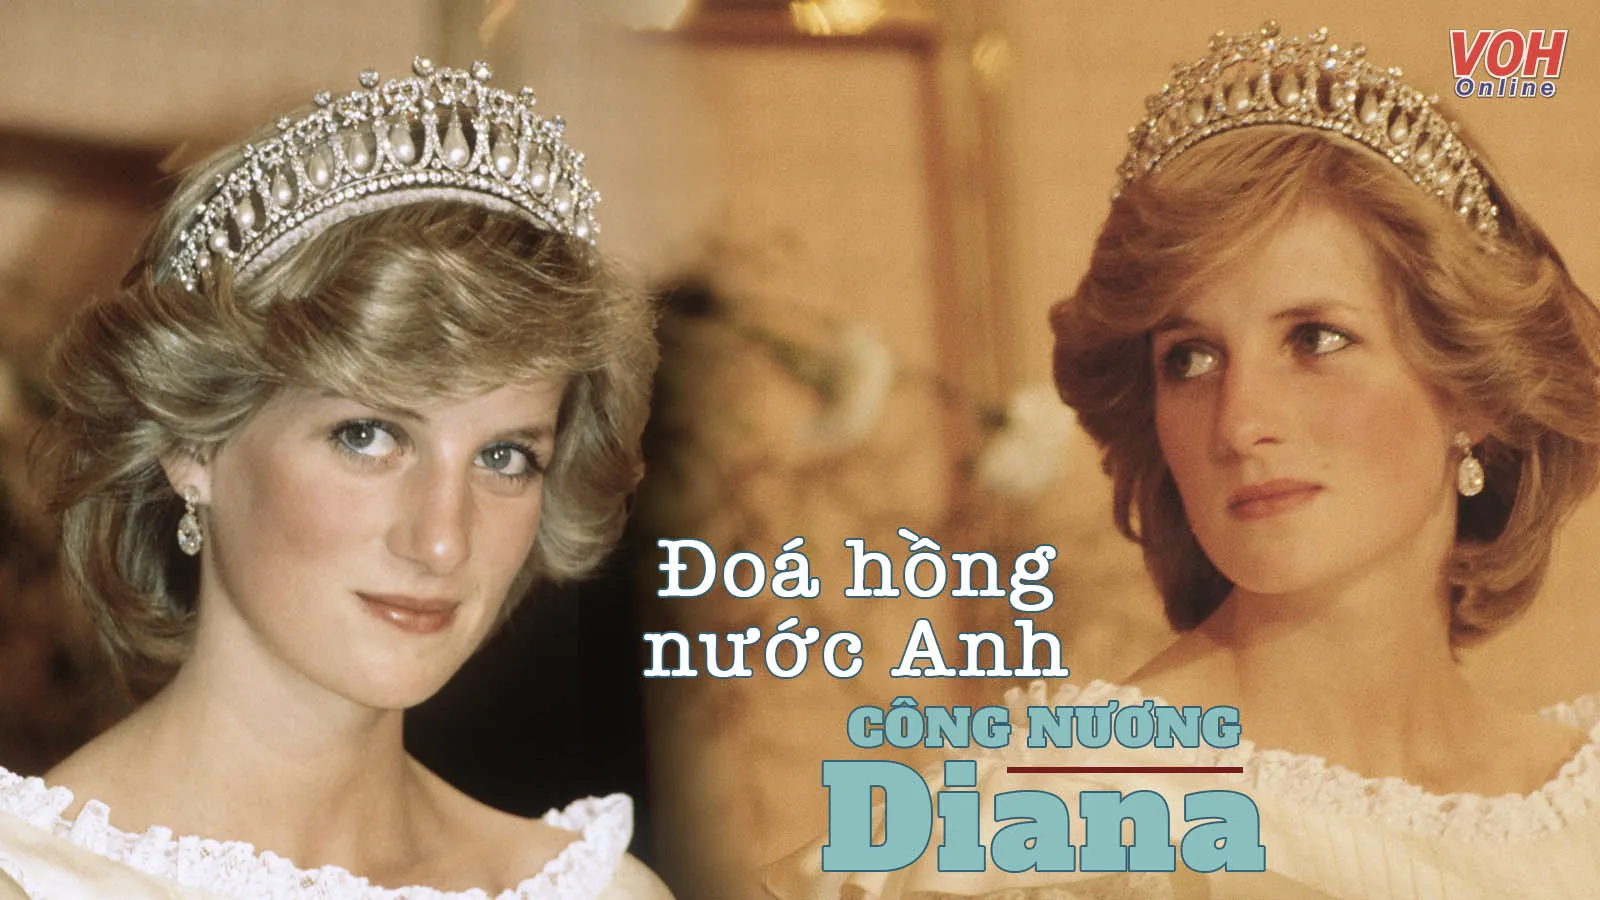 Những câu nói bất hủ của Công nương Diana, đoá hoa nhân ái nhưng bạc mệnh